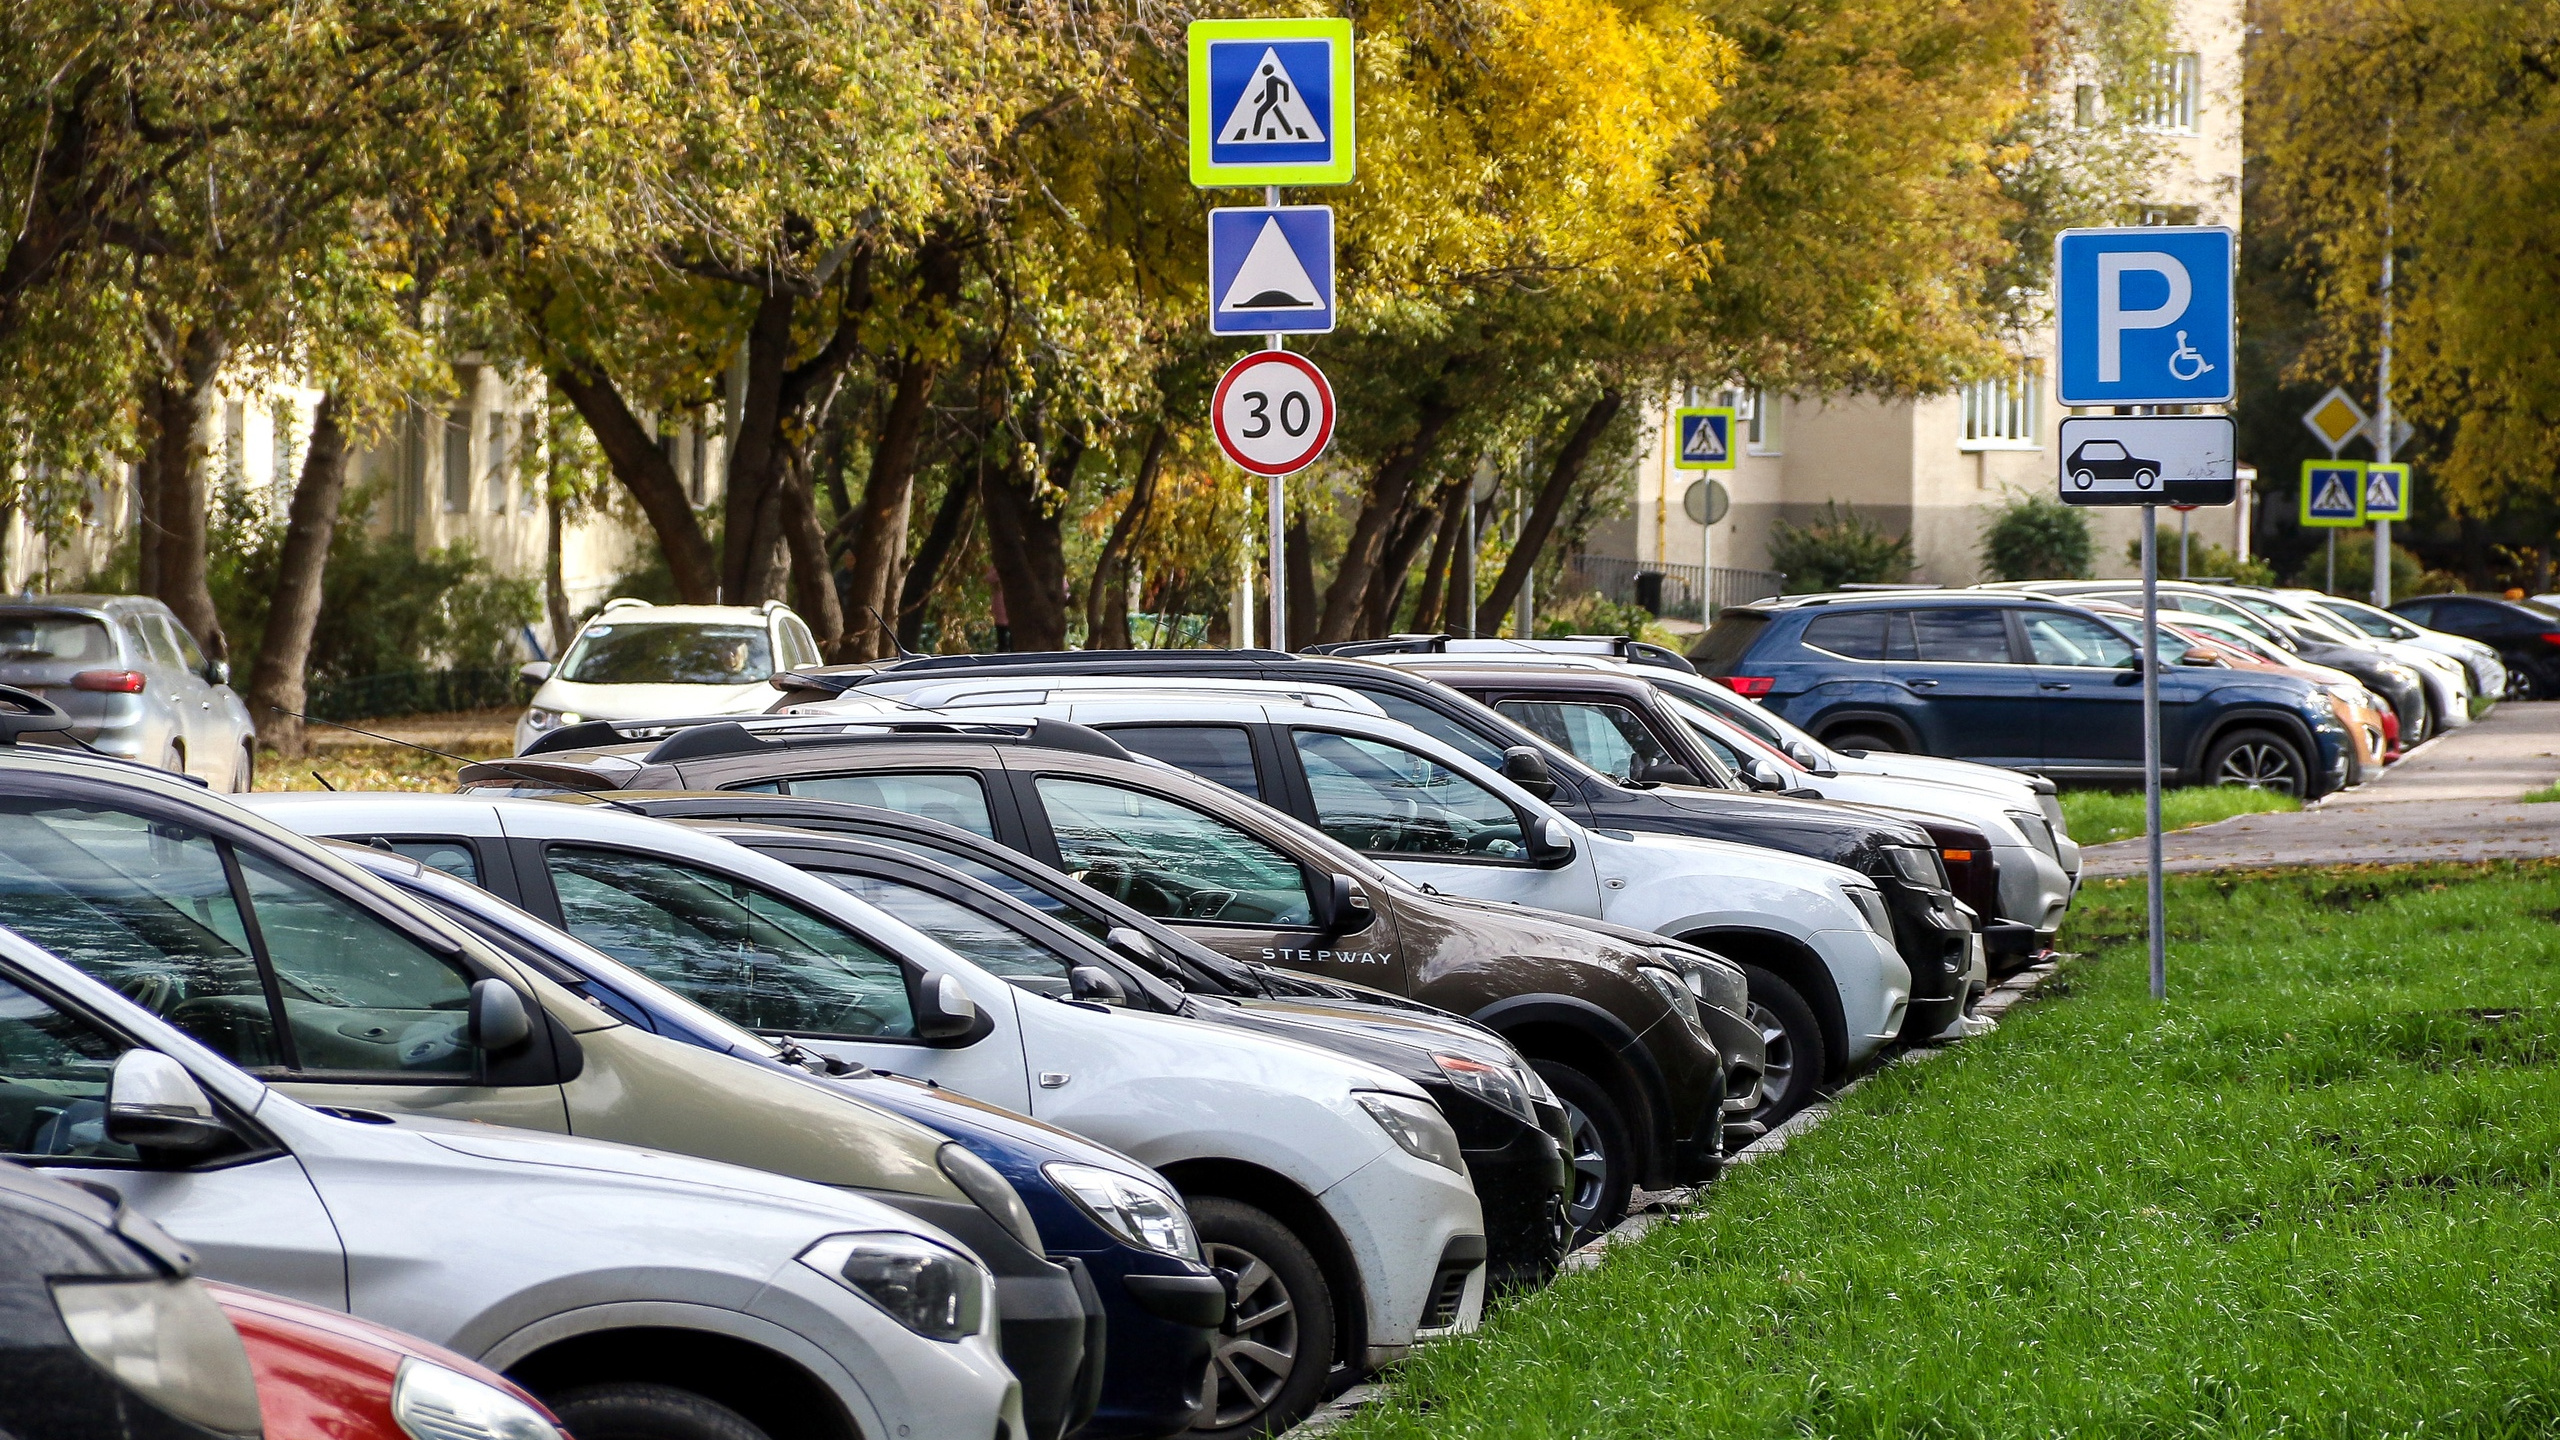 Продажа резидентских абонементов на парковку в Нижнем Новгороде начнется с <nobr class="_">1 декабря</nobr>